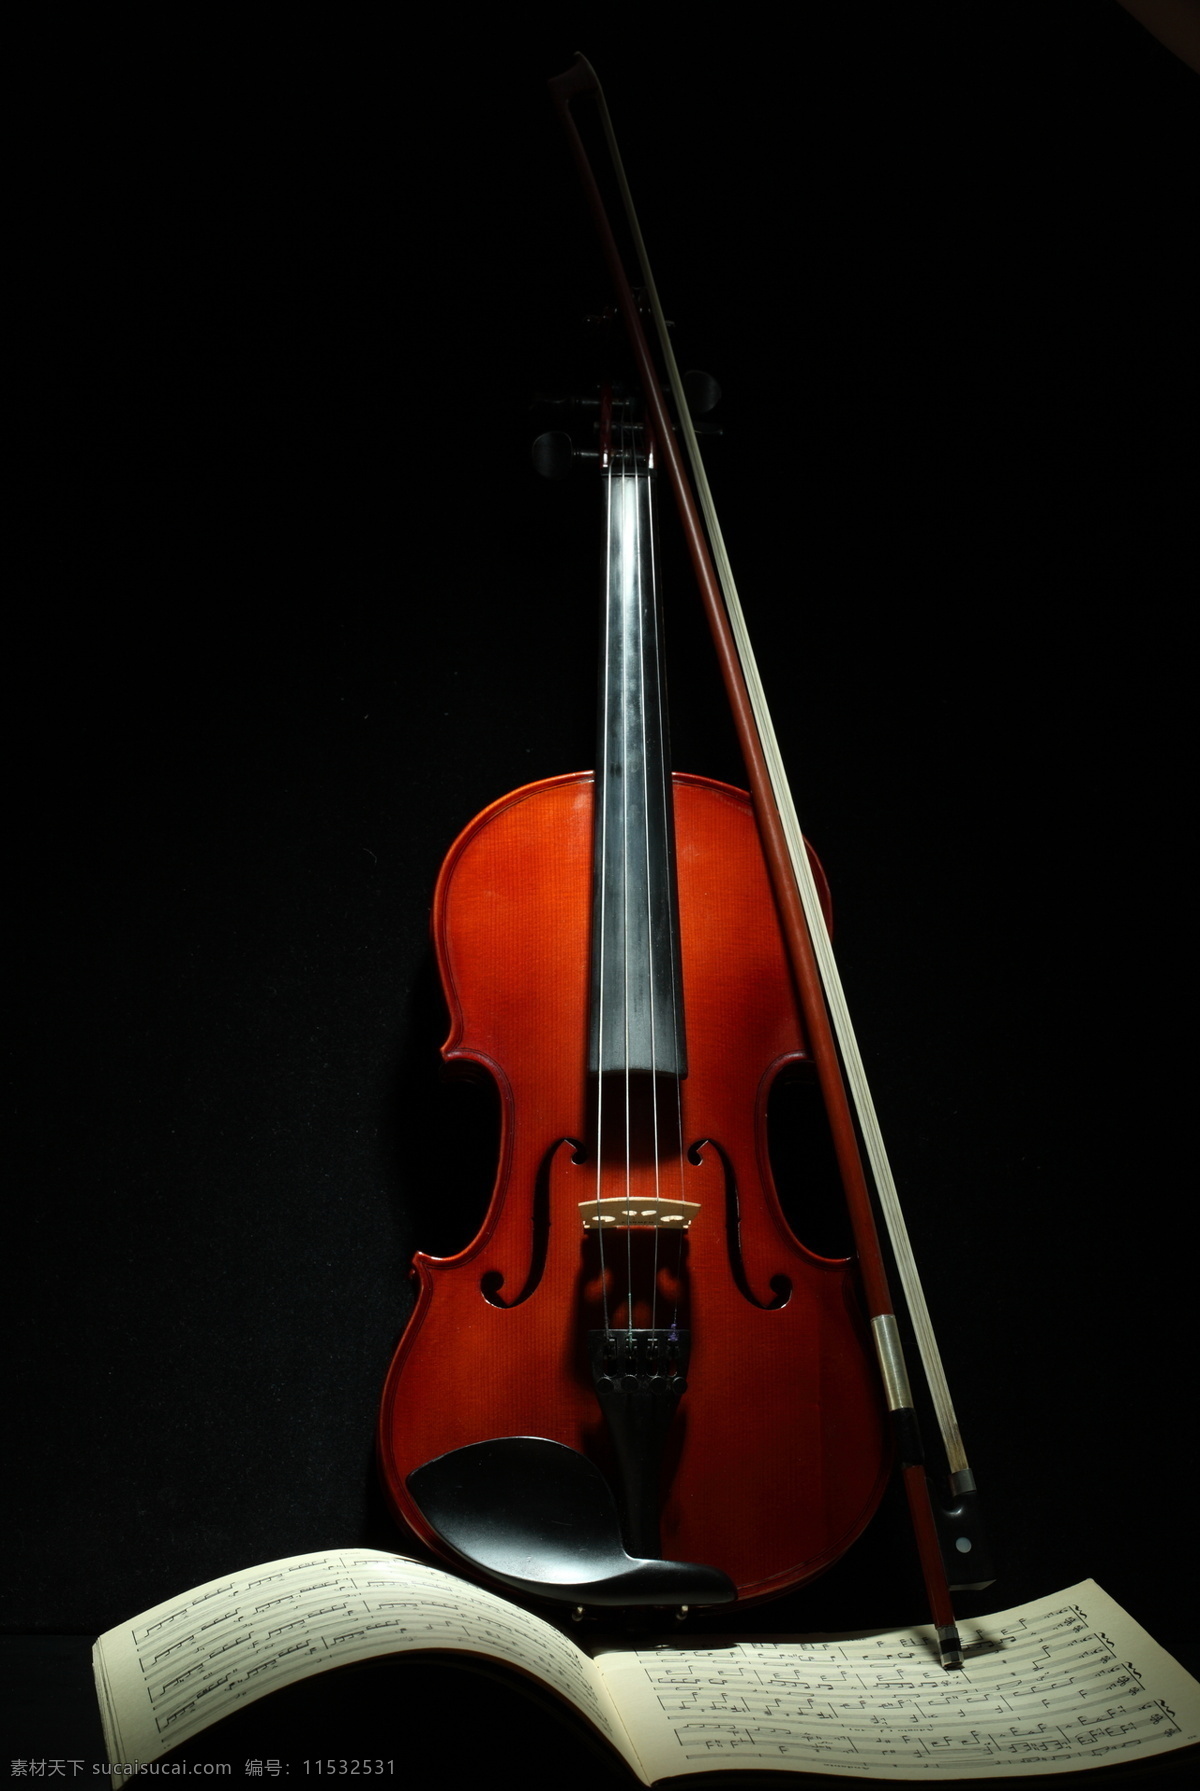 小提琴与音符 小提琴 乐谱 音符 中提琴 文化艺术 音乐 影音娱乐 生活百科 黑色